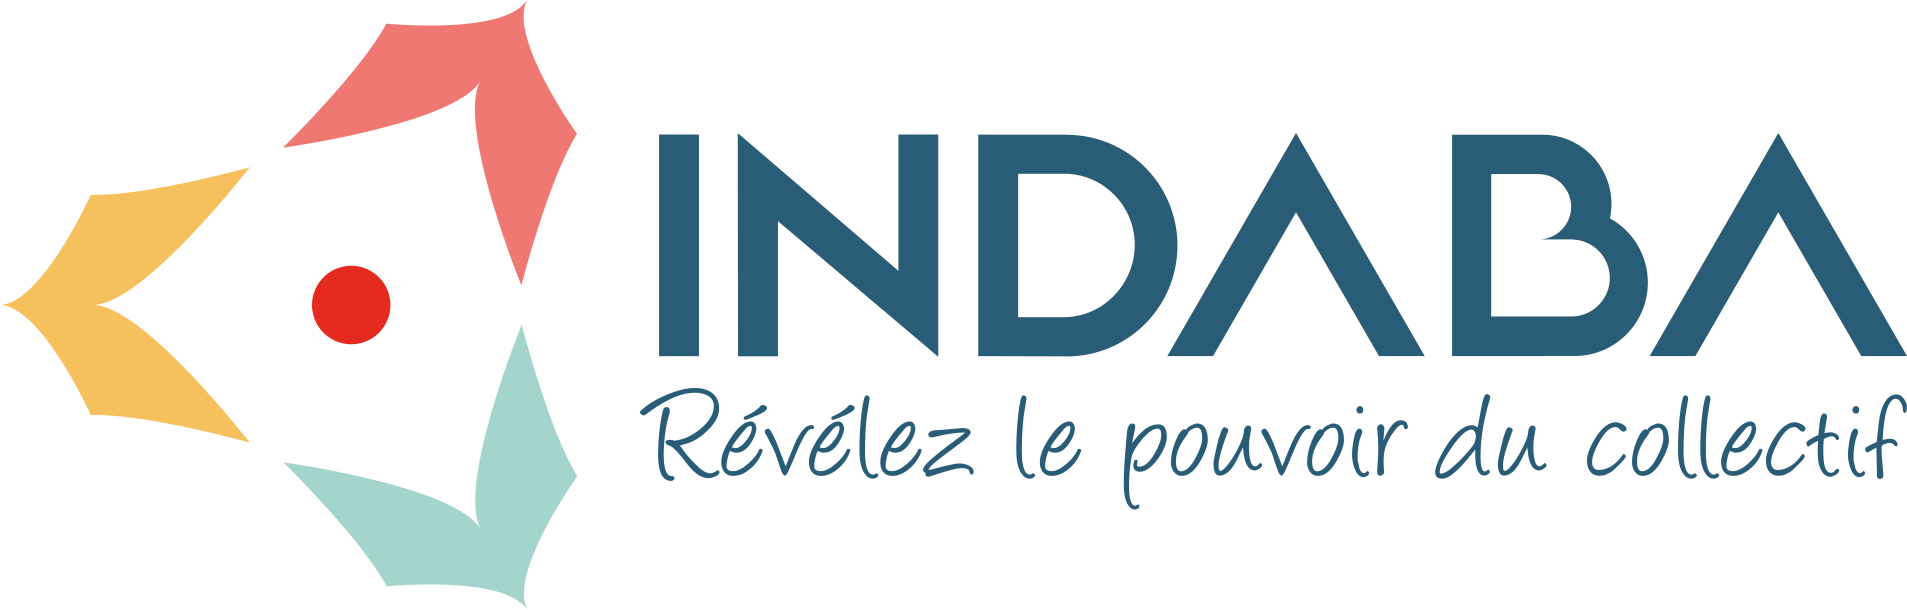 Logo Indaba : 3 tentes de couleurs en cercle autour d'un point qui représente symboliquement un feu de camp. Sous le nom Indaba apparait la baseline Révélez le pouvoir du collectif.